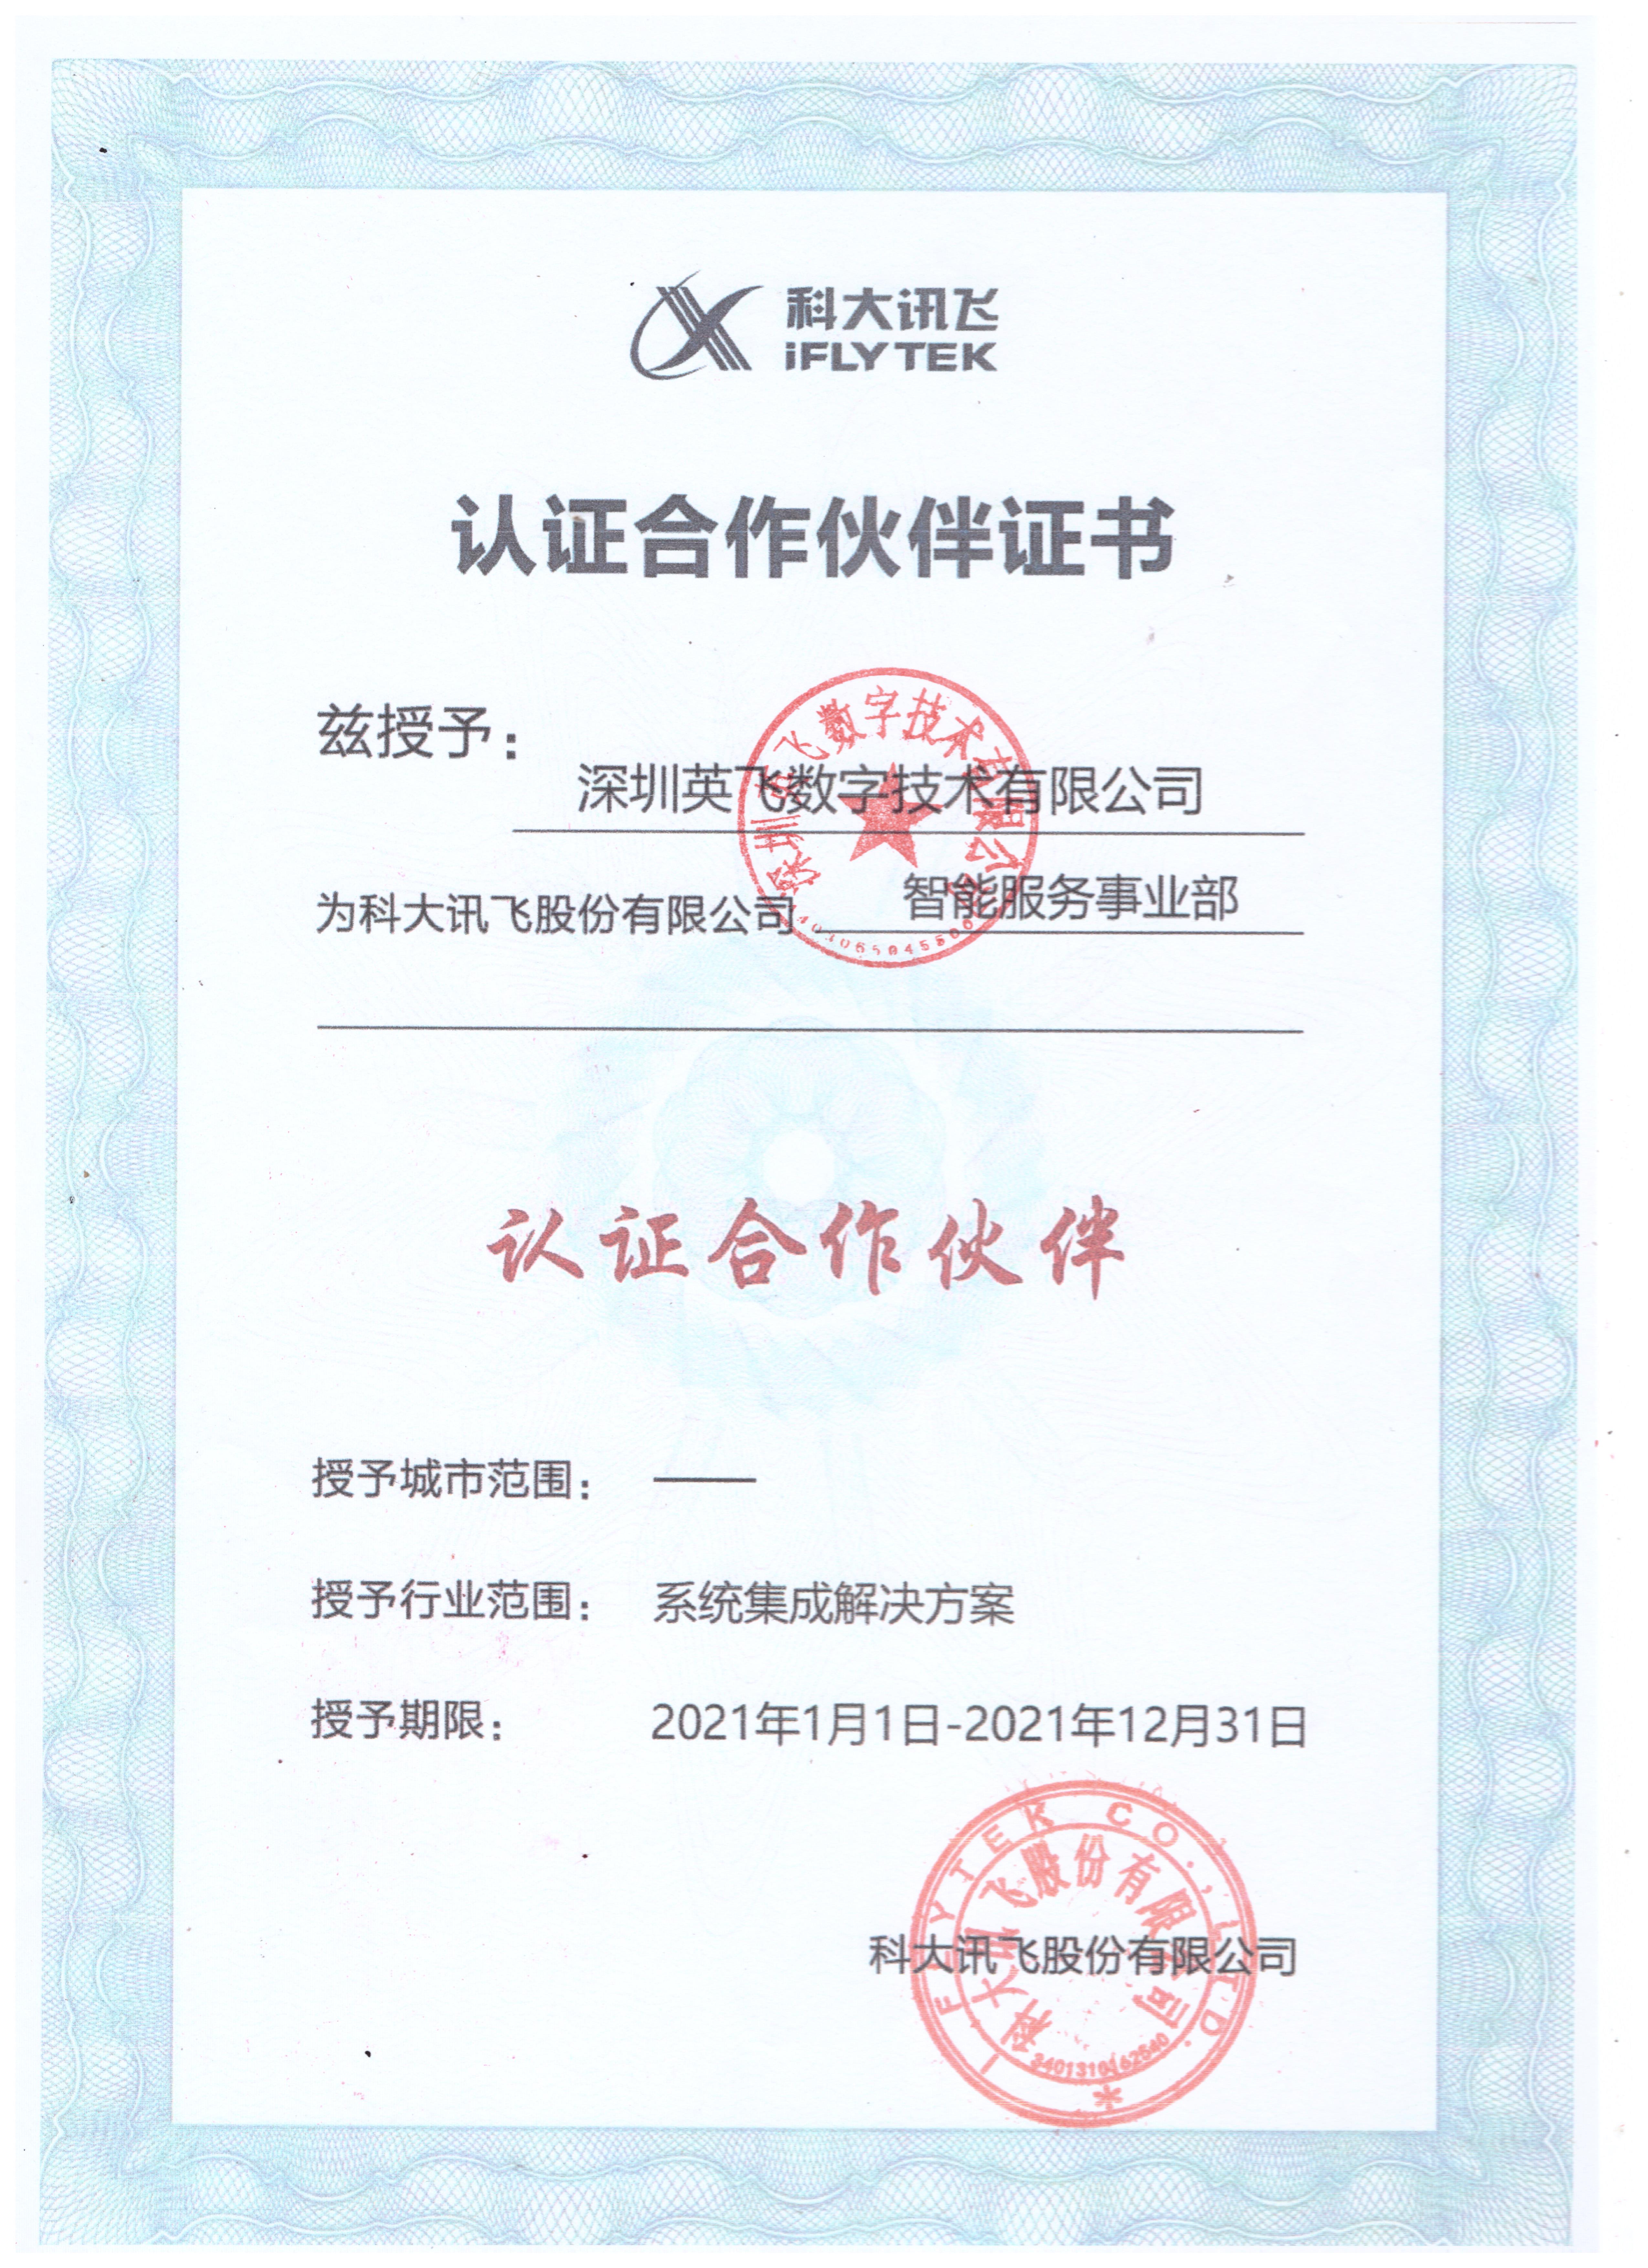 科大讯飞&英飞认证合作伙伴证书